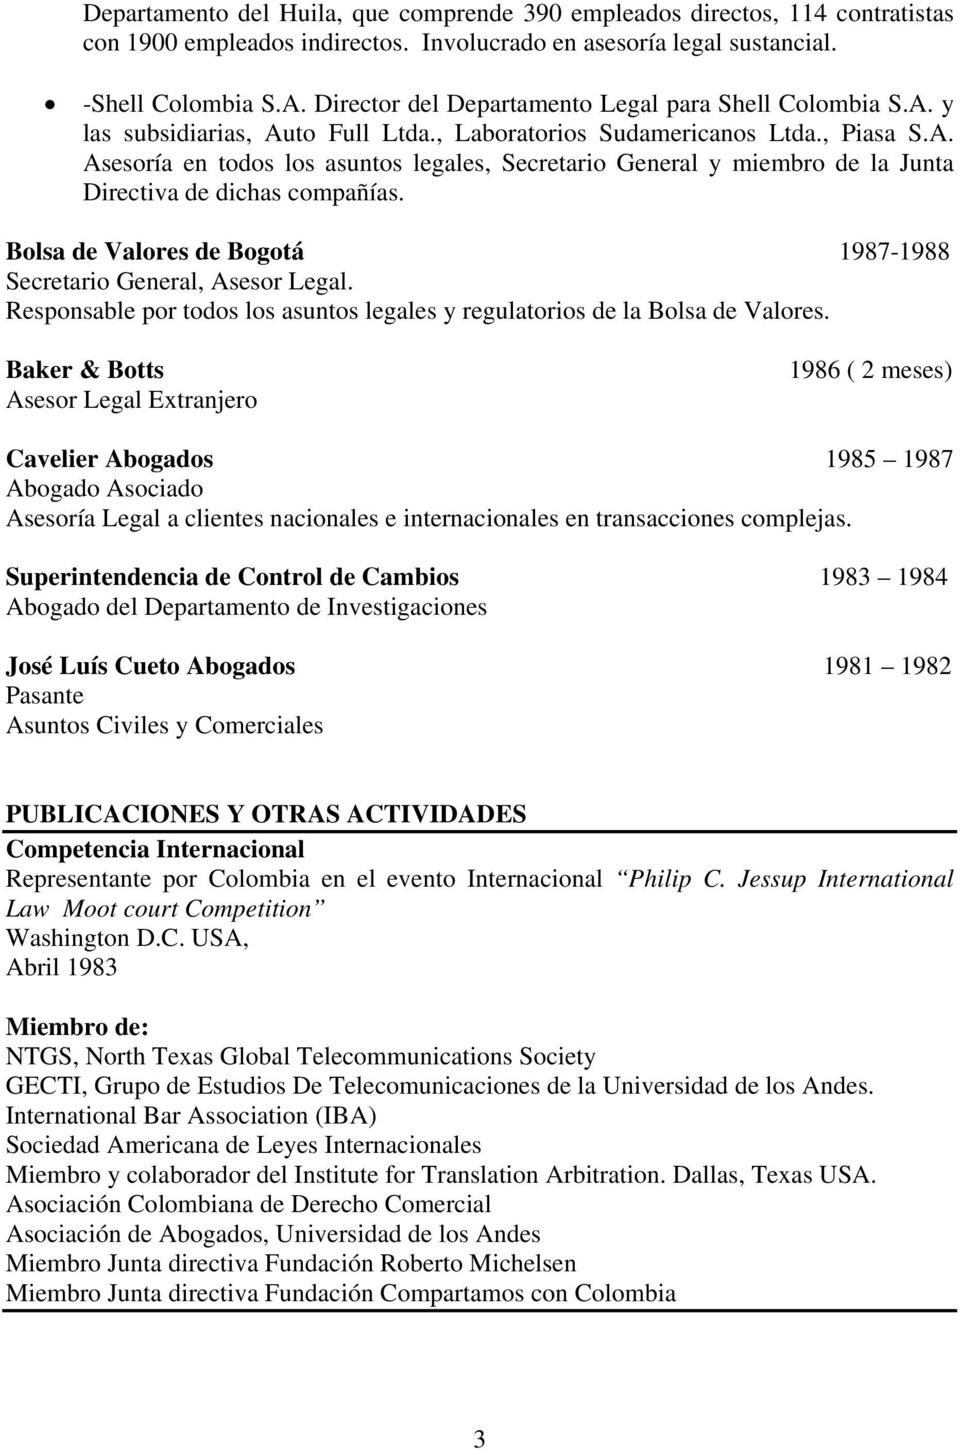 Bolsa de Valores de Bogotá 1987-1988 Secretario General, Asesor Legal. Responsable por todos los asuntos legales y regulatorios de la Bolsa de Valores.